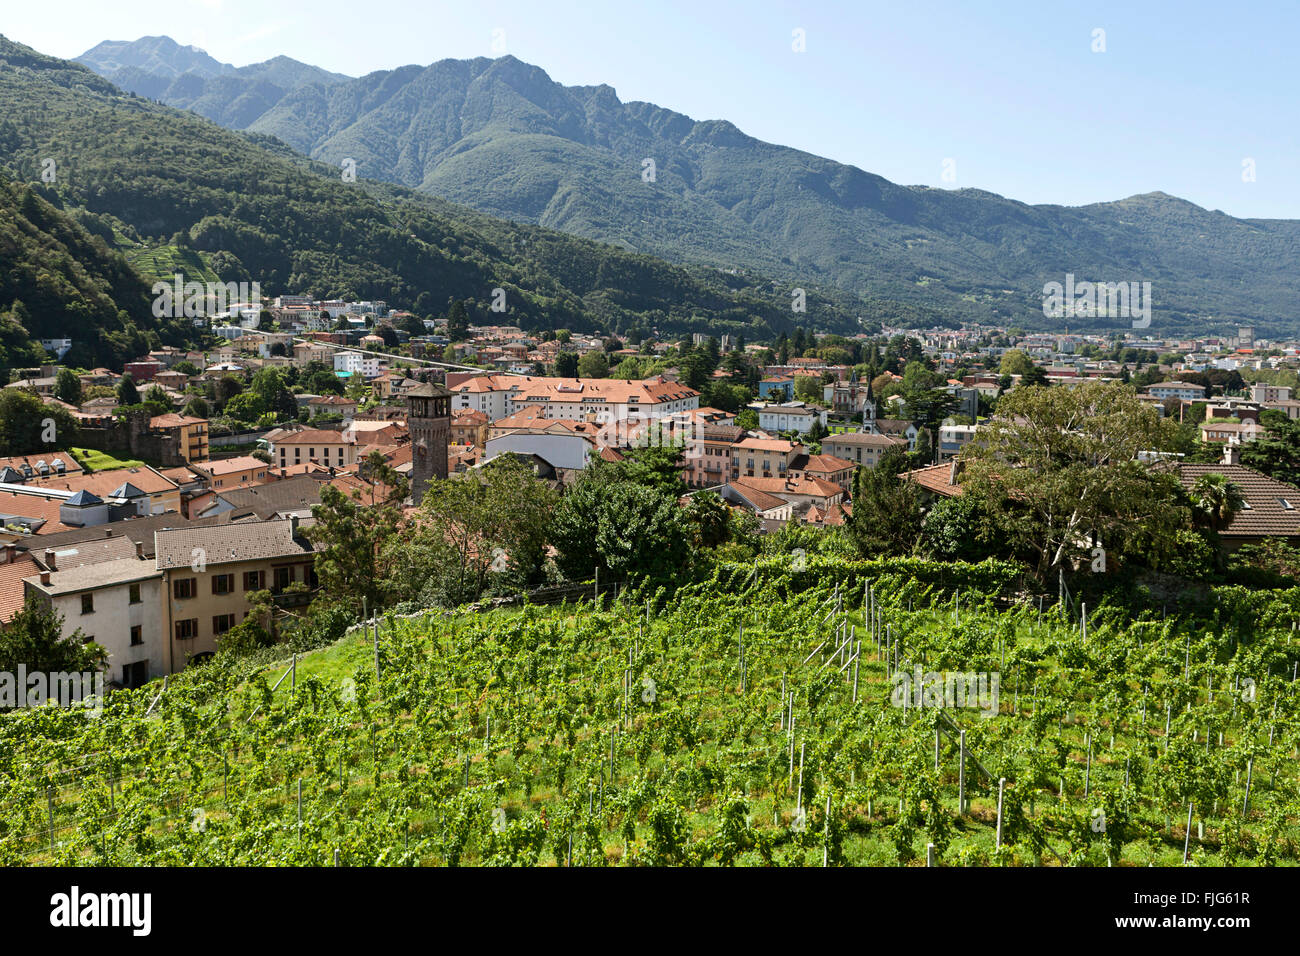 Vineyard, overlooking Bellinzona, Canton of Ticino, Switzerland Stock Photo